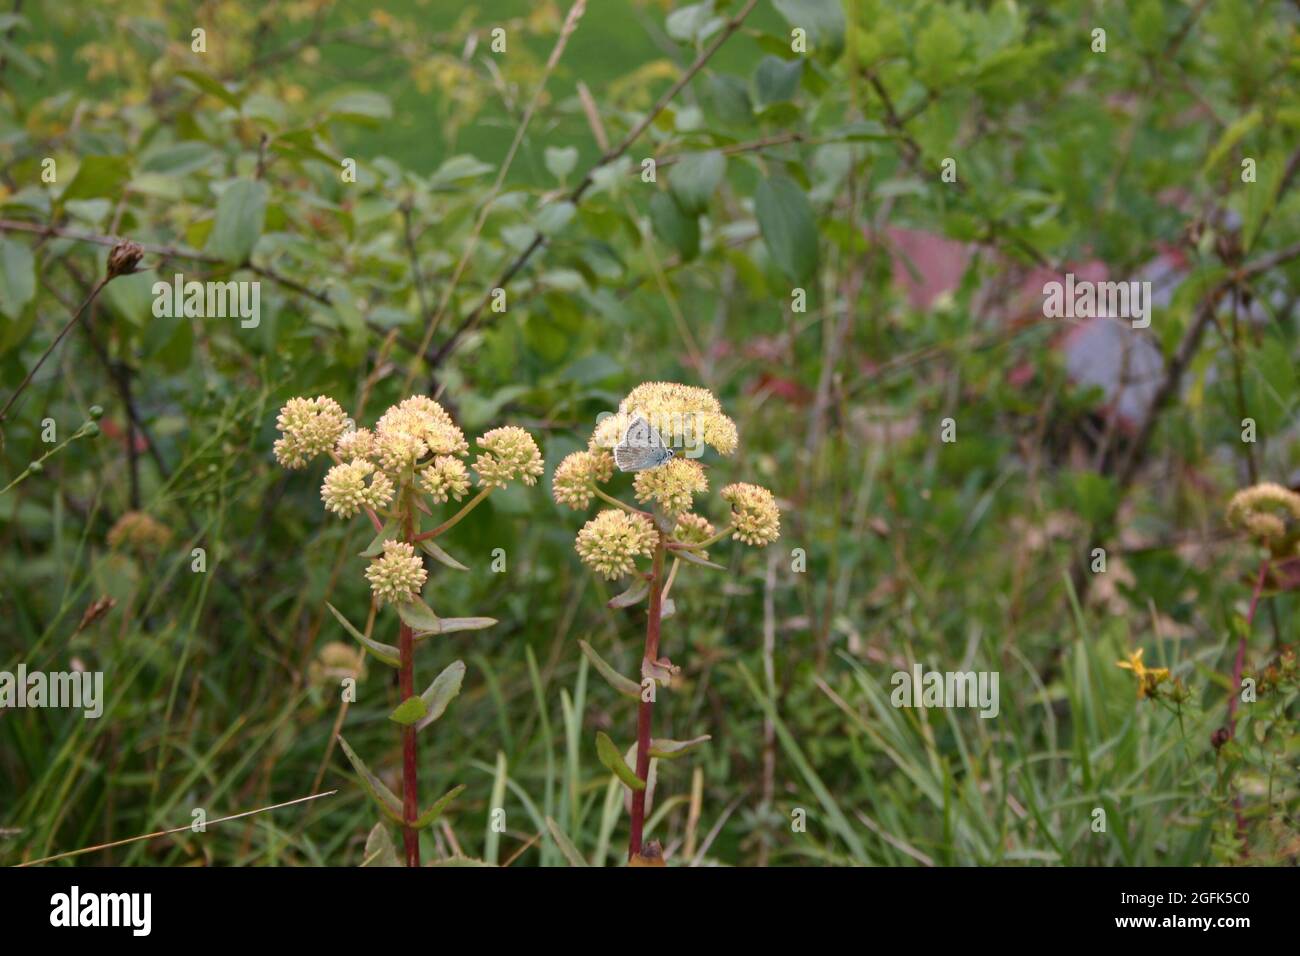 Landschaftsaufnahme Wiese mit Blumen und Schmetterling Stock Photo